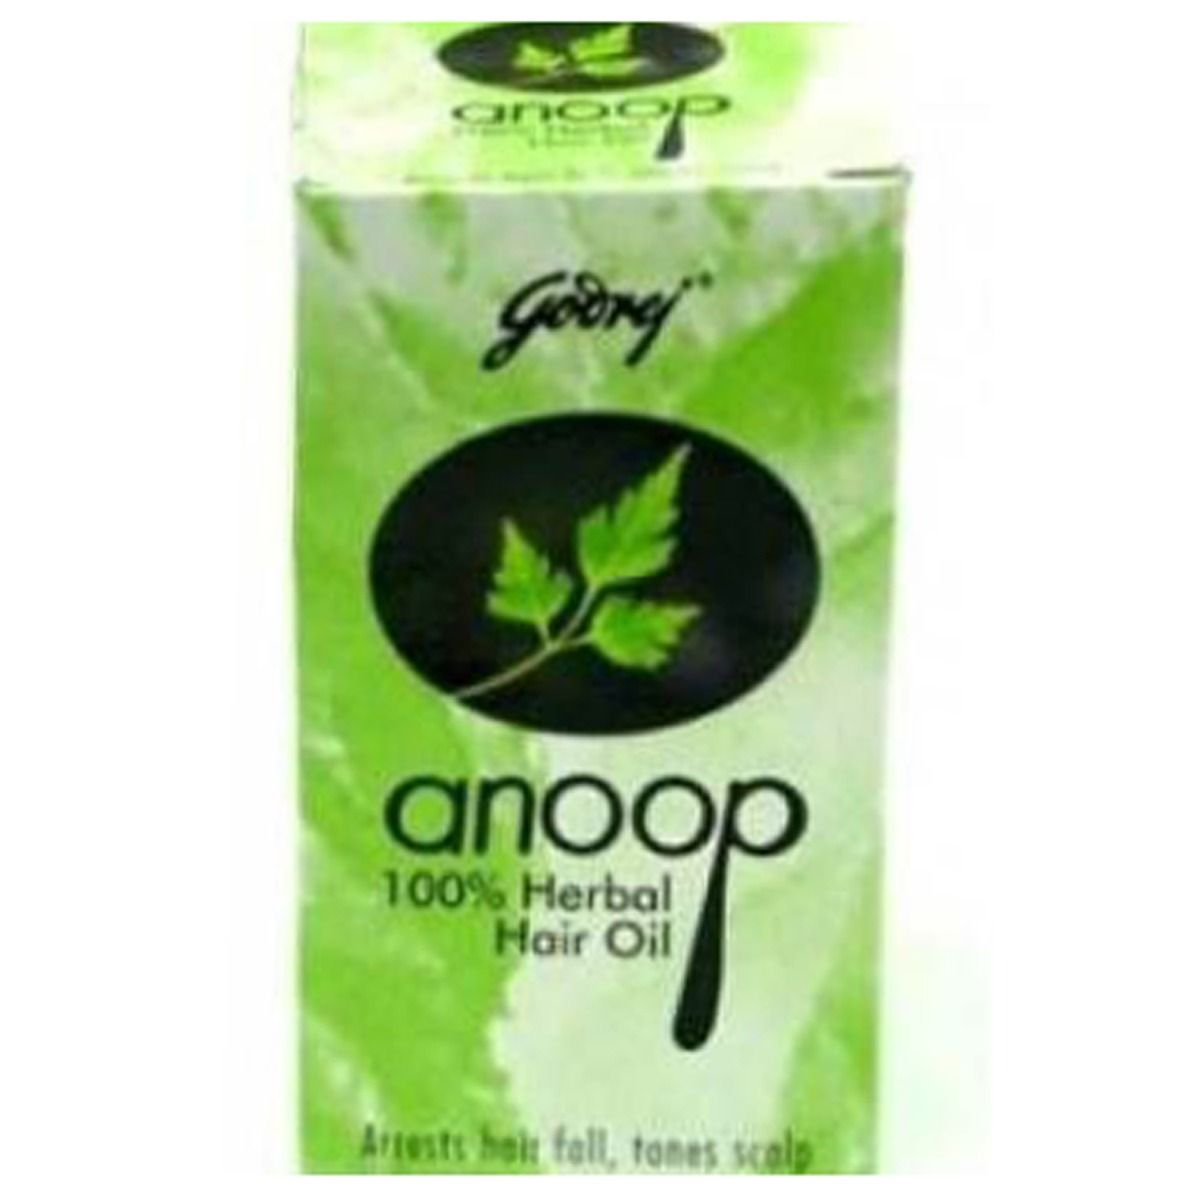 Godrej Anoop Herbal Hair Oil, 50 ml, Pack of 1 